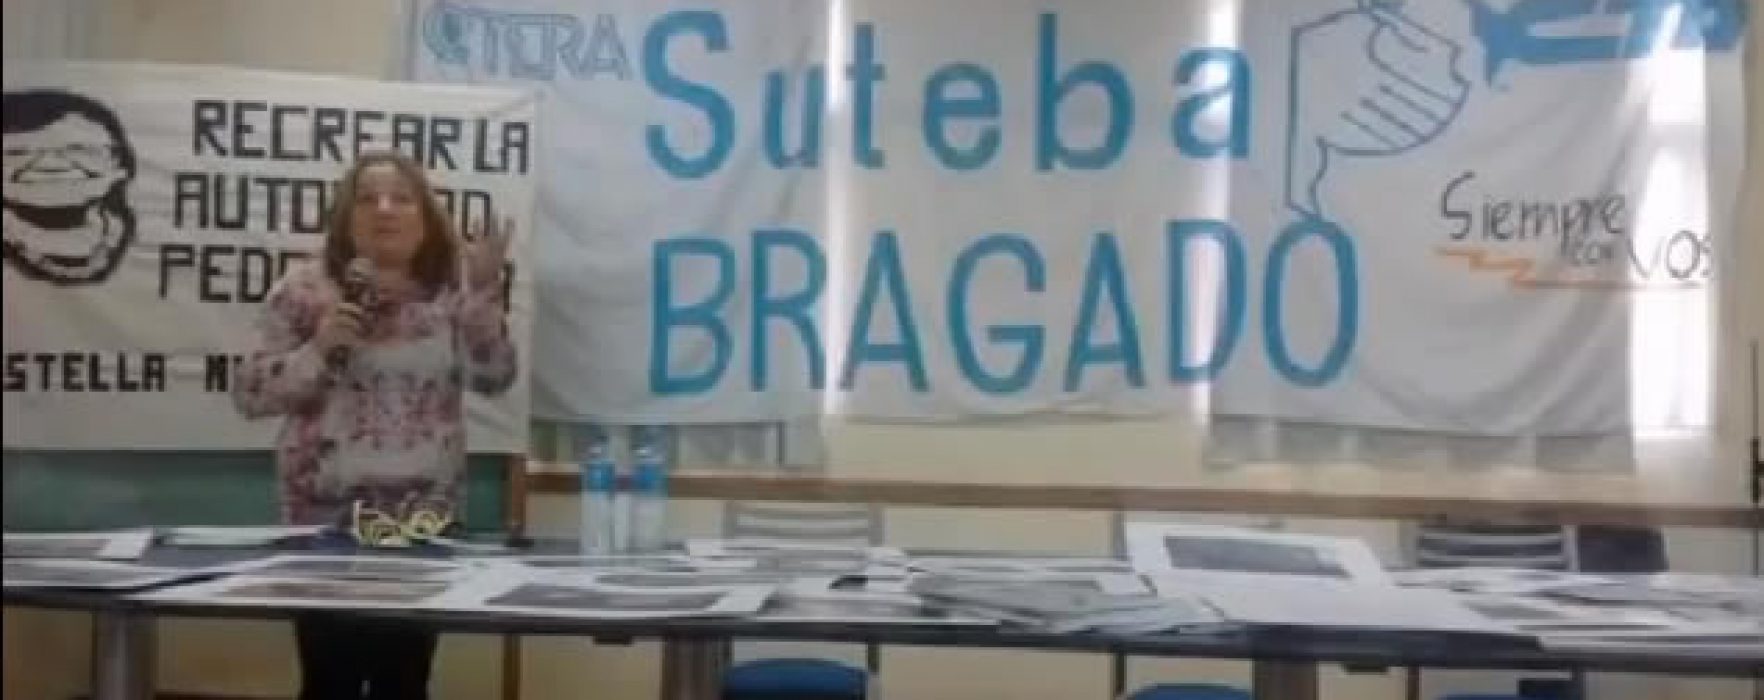 SUTEBA. Mañana paran los docentes de la Pcia. de Buenos Aires